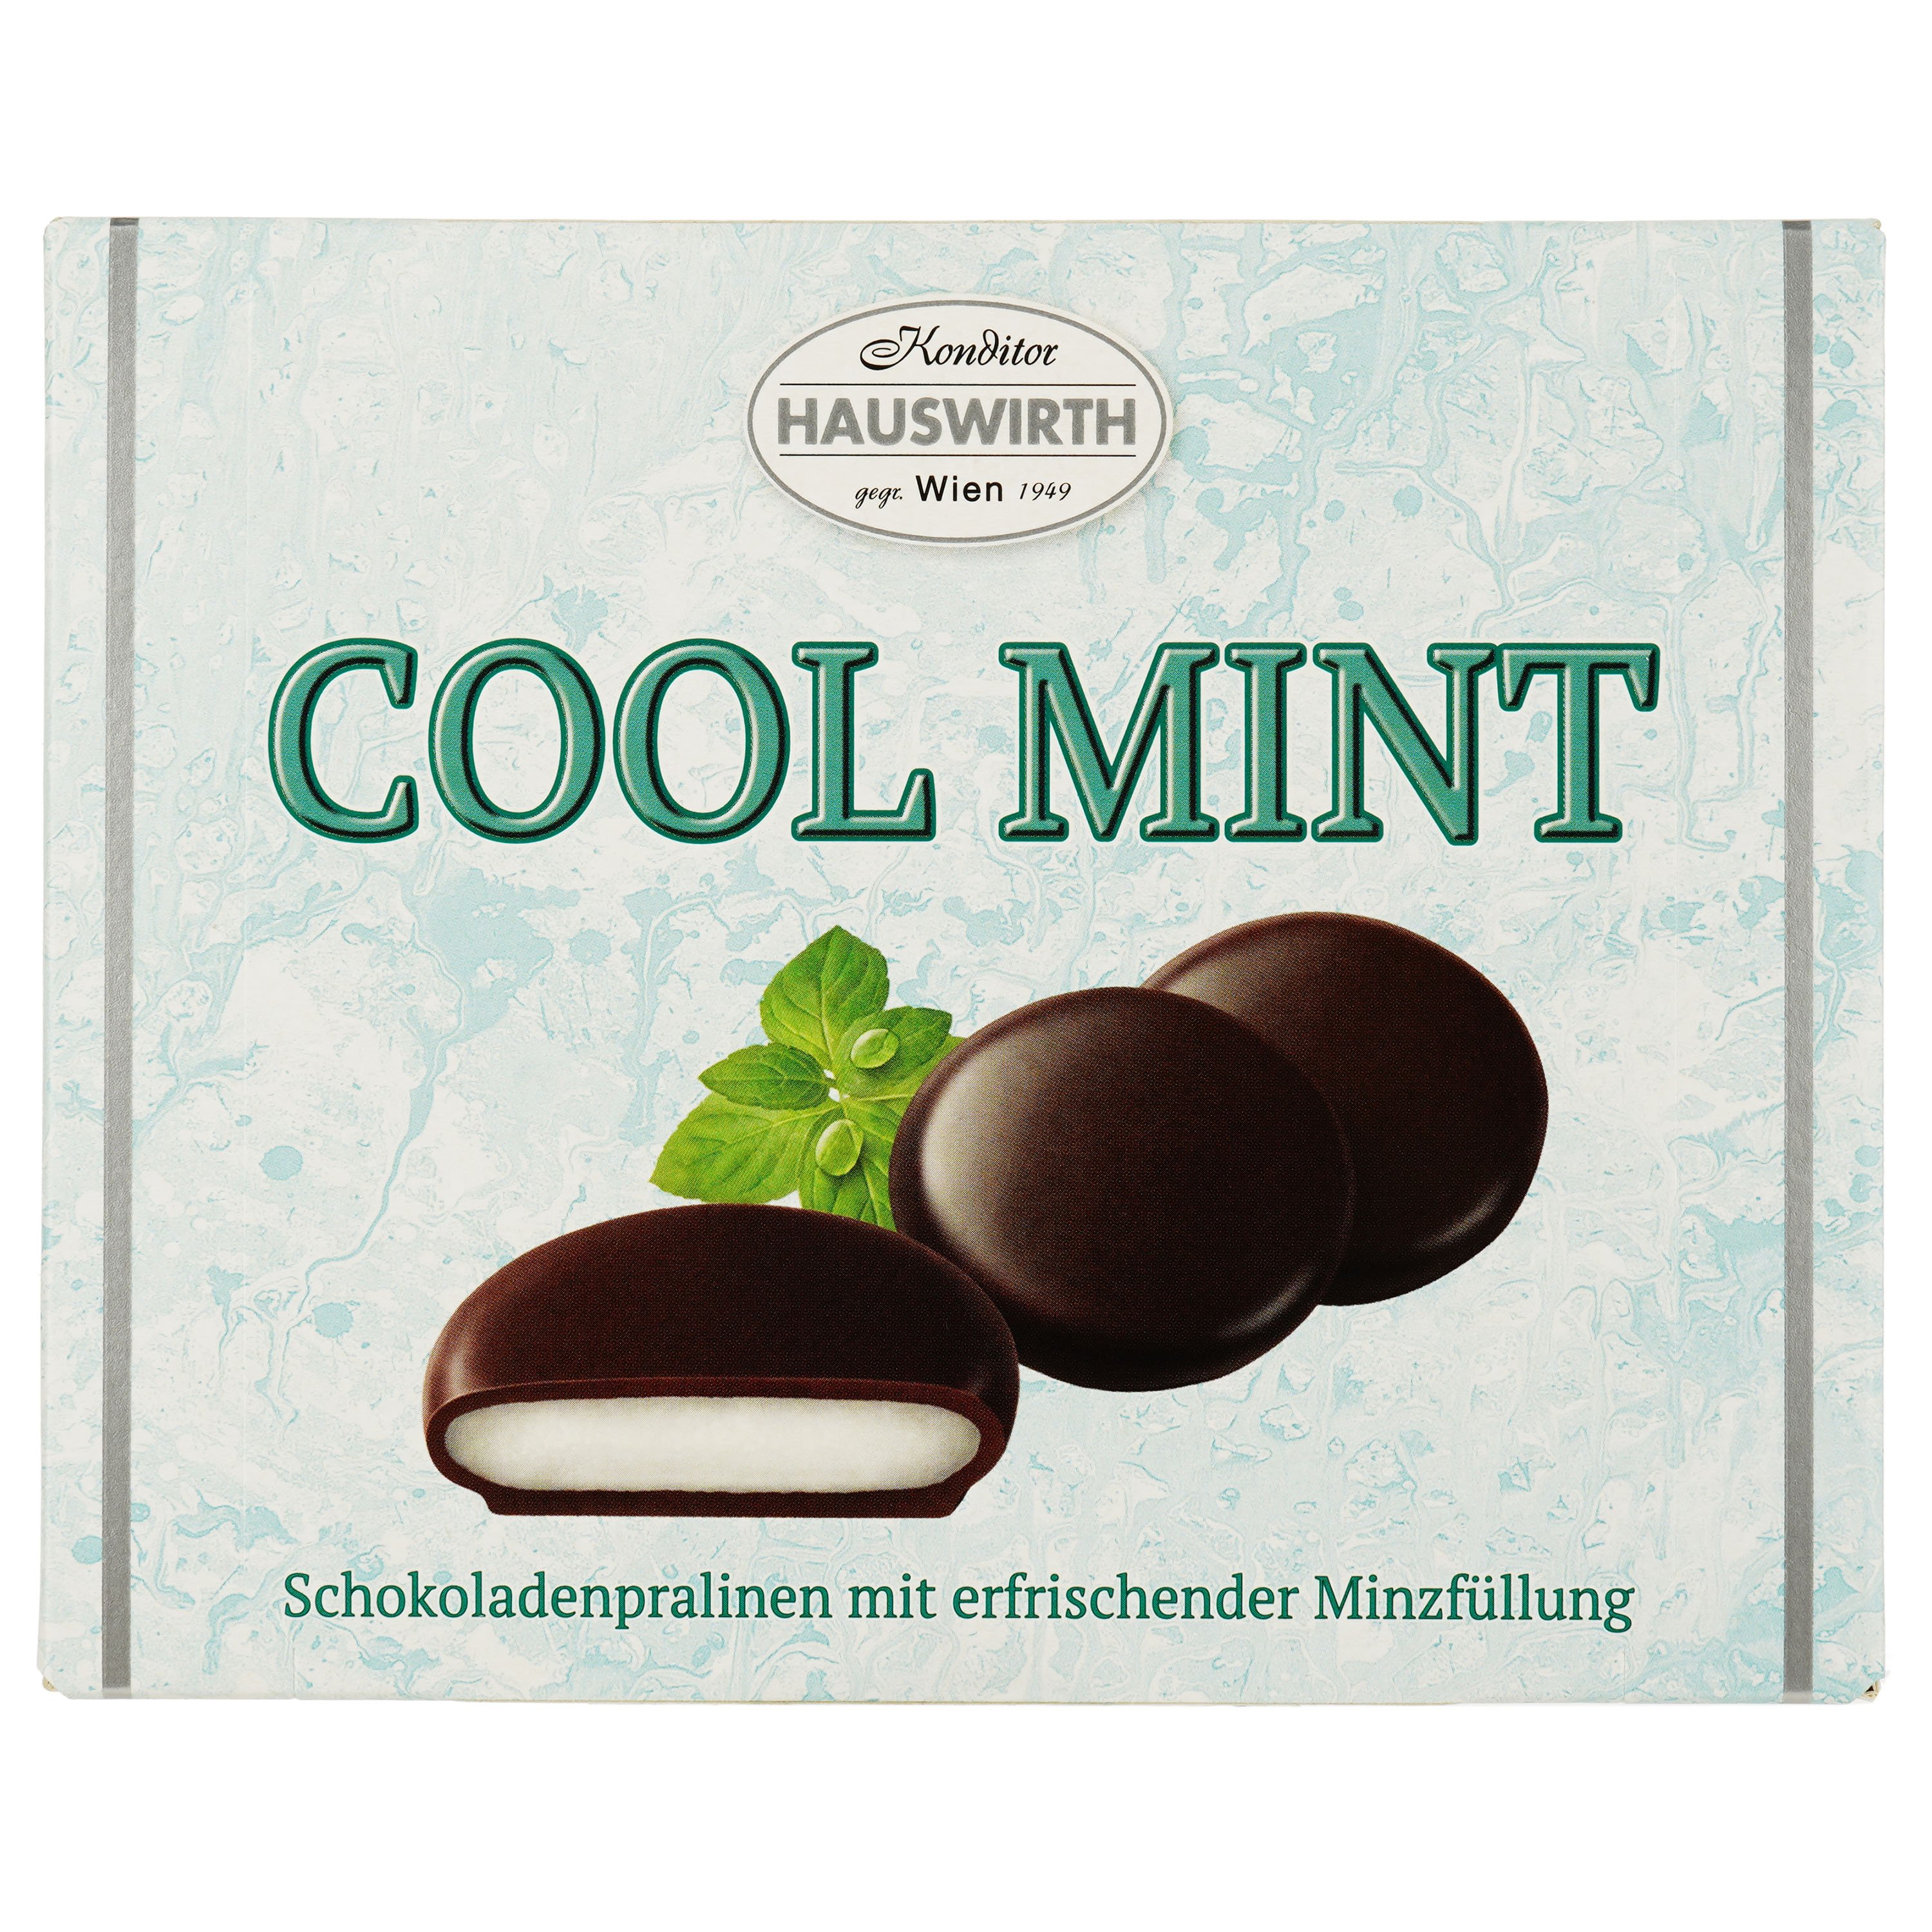 М'ятний фондан Hauswirthі Cool Mint в шоколаді, 135 г - фото 1